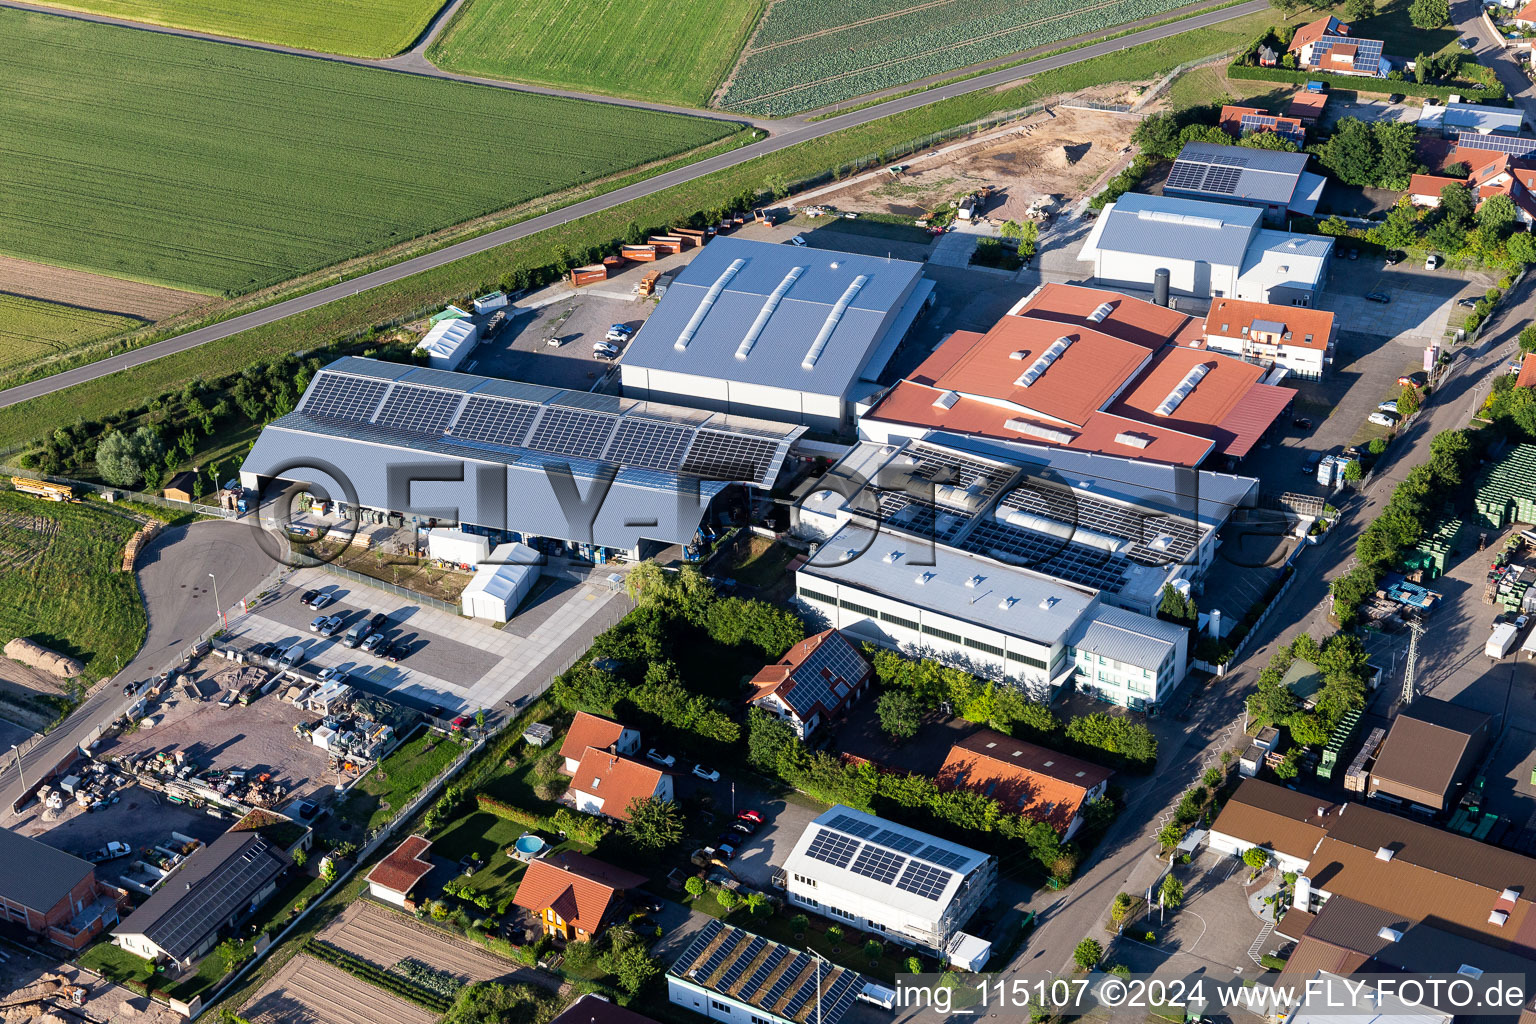 Vue aérienne de Zone commerciale et implantation d'entreprise à Im Gereut avec WWS Metall Formen GmbH et HGGS LaserCUT GmbH & Co. KG à Hatzenbühl dans le département Rhénanie-Palatinat, Allemagne